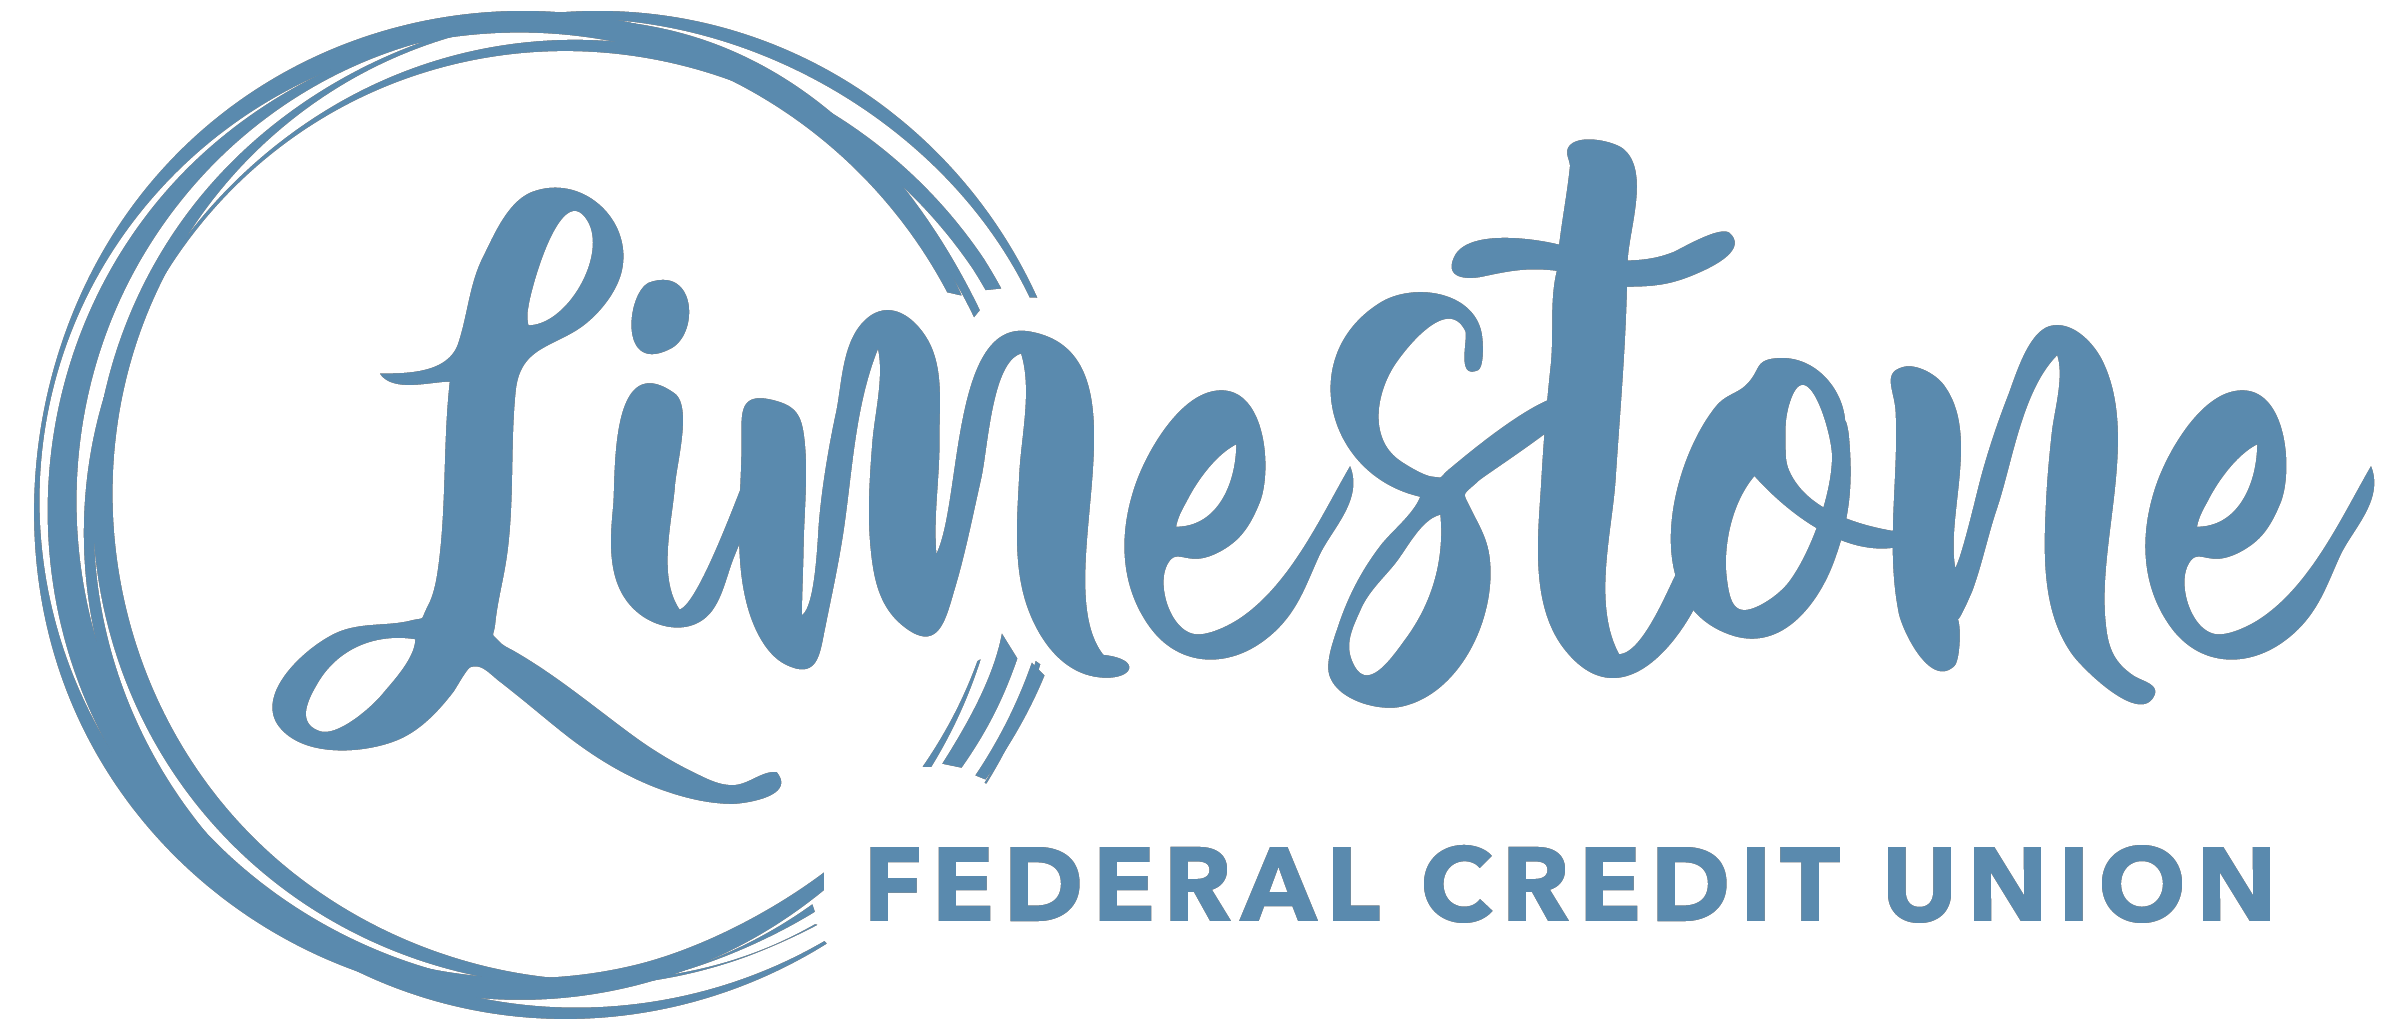 Limestone Federal Credit Union